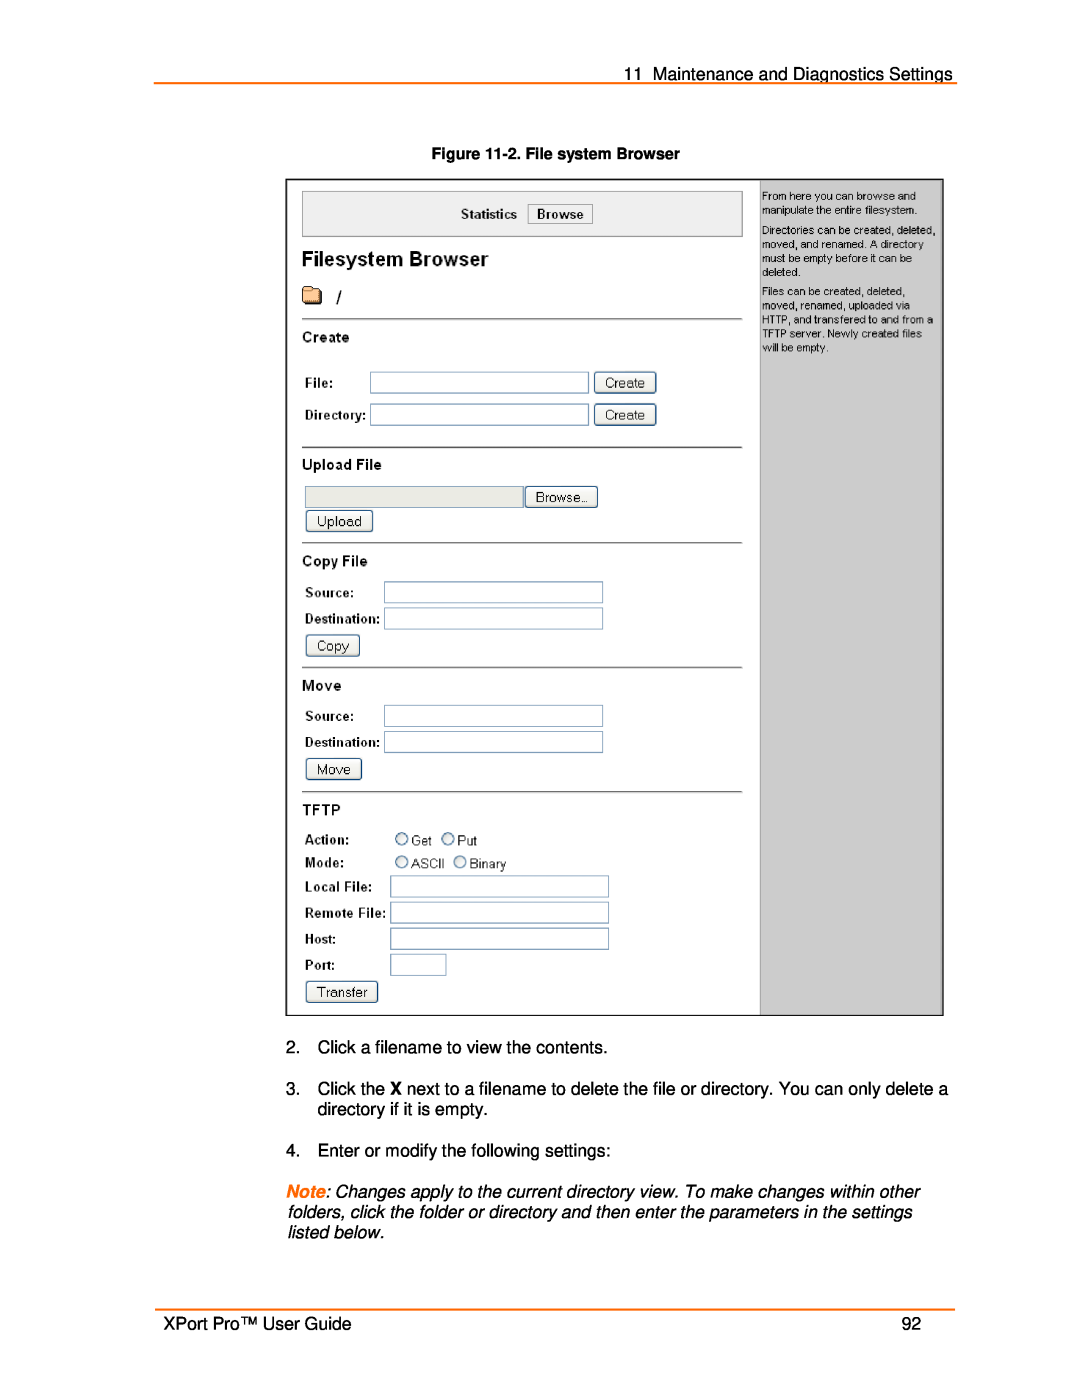 Lantronix 900-560 manual 2. File system Browser 